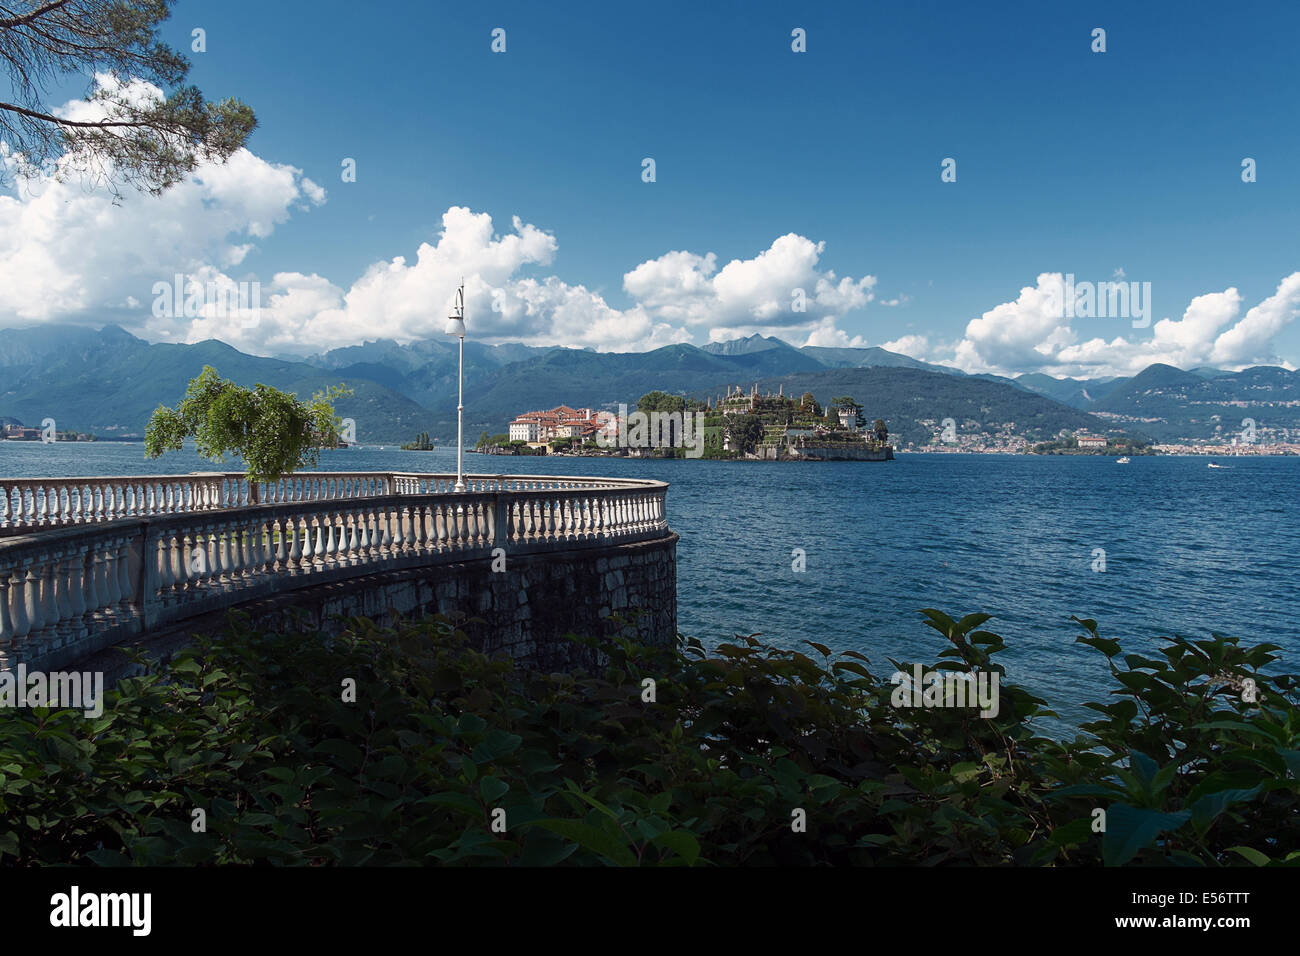 Stresa - Isola Bella and Isola dei Pescatori - Lago Maggiore Stock Photo